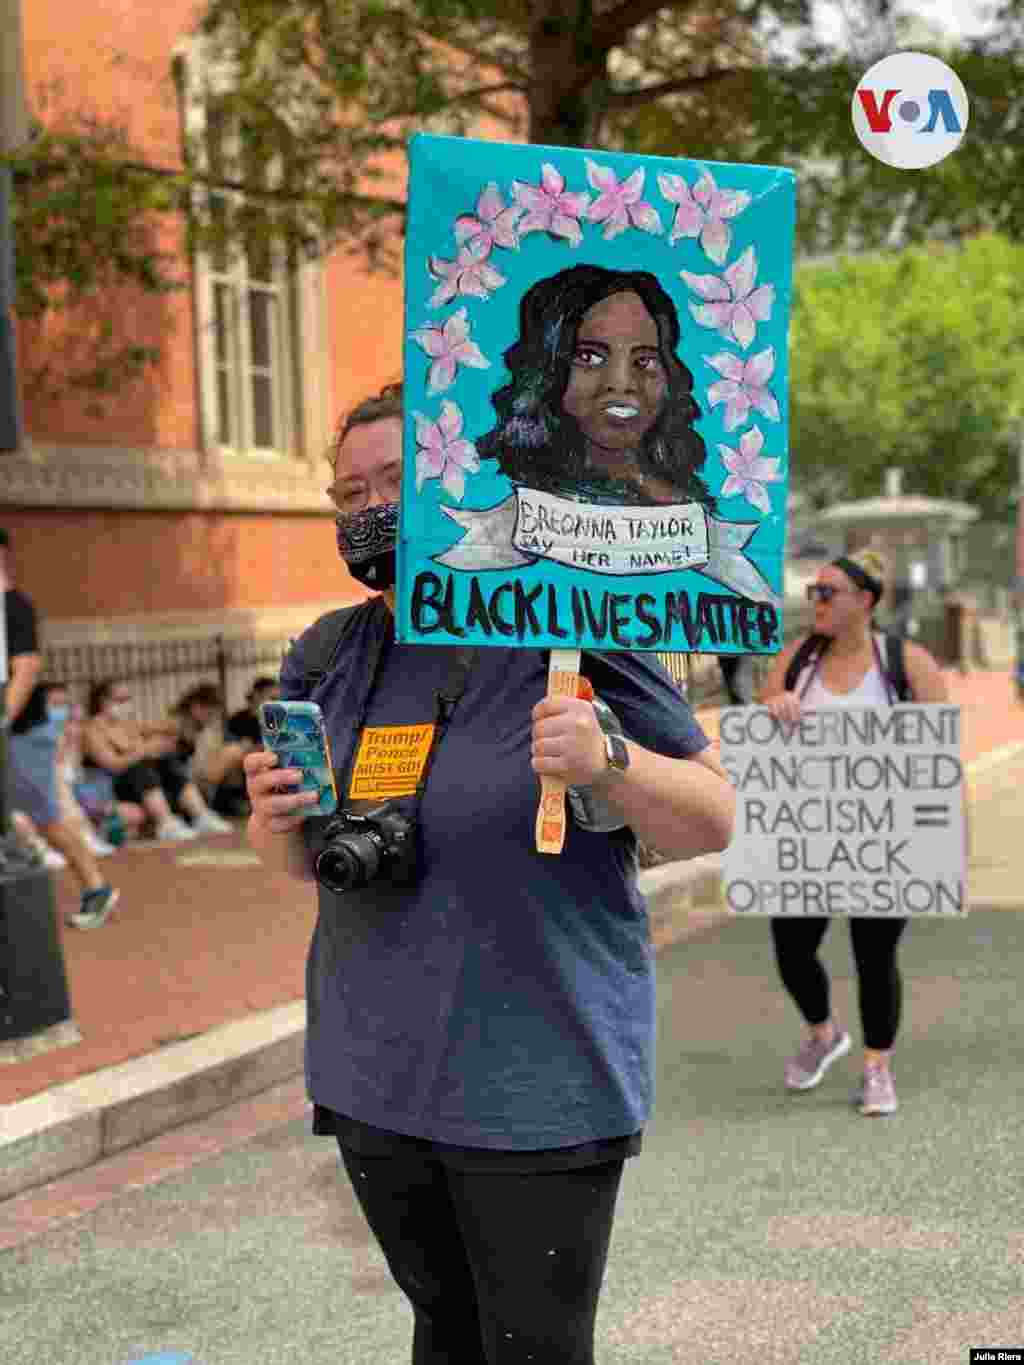 Las vidas negras importan y el racismo sancionado por el gobierno es igual a la opresi&#243;n de los negros, dicen los carteles de dos manifestantes en Washington D.C. el s&#225;bado 6 de junio de 2020.